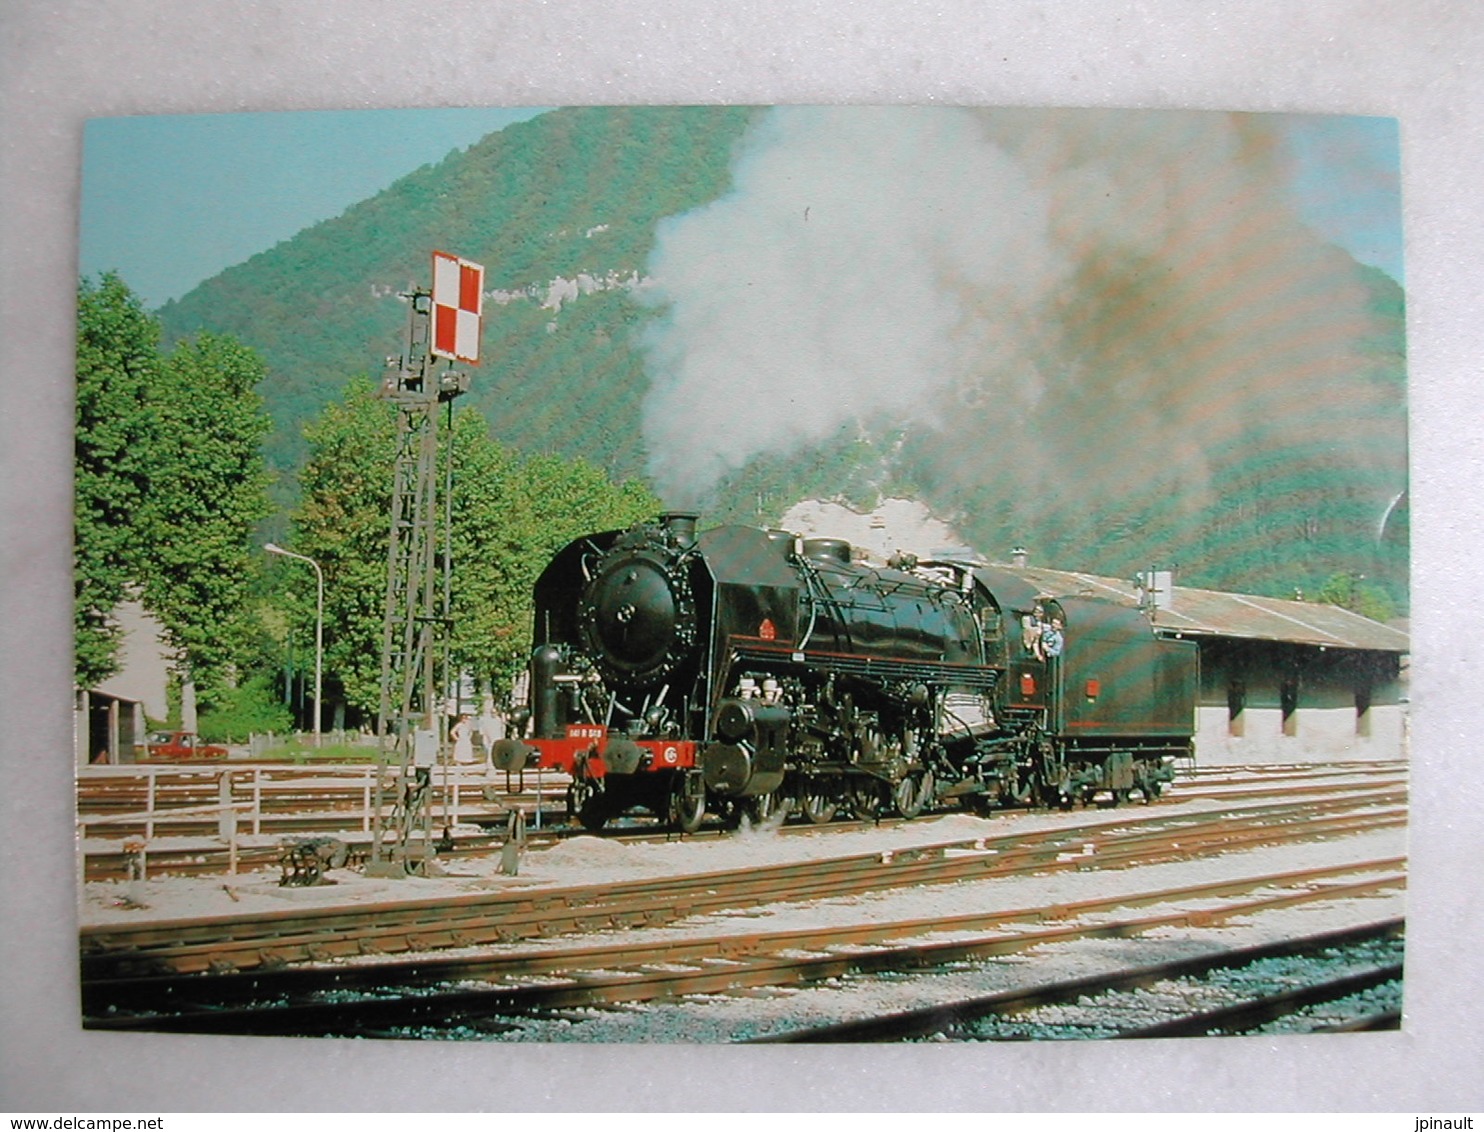 LOT de 50 CPM - Thème FERROVIAIRE - Trains et locomotives de tous types et âges (voyageurs ; marchandises ; loisirs)